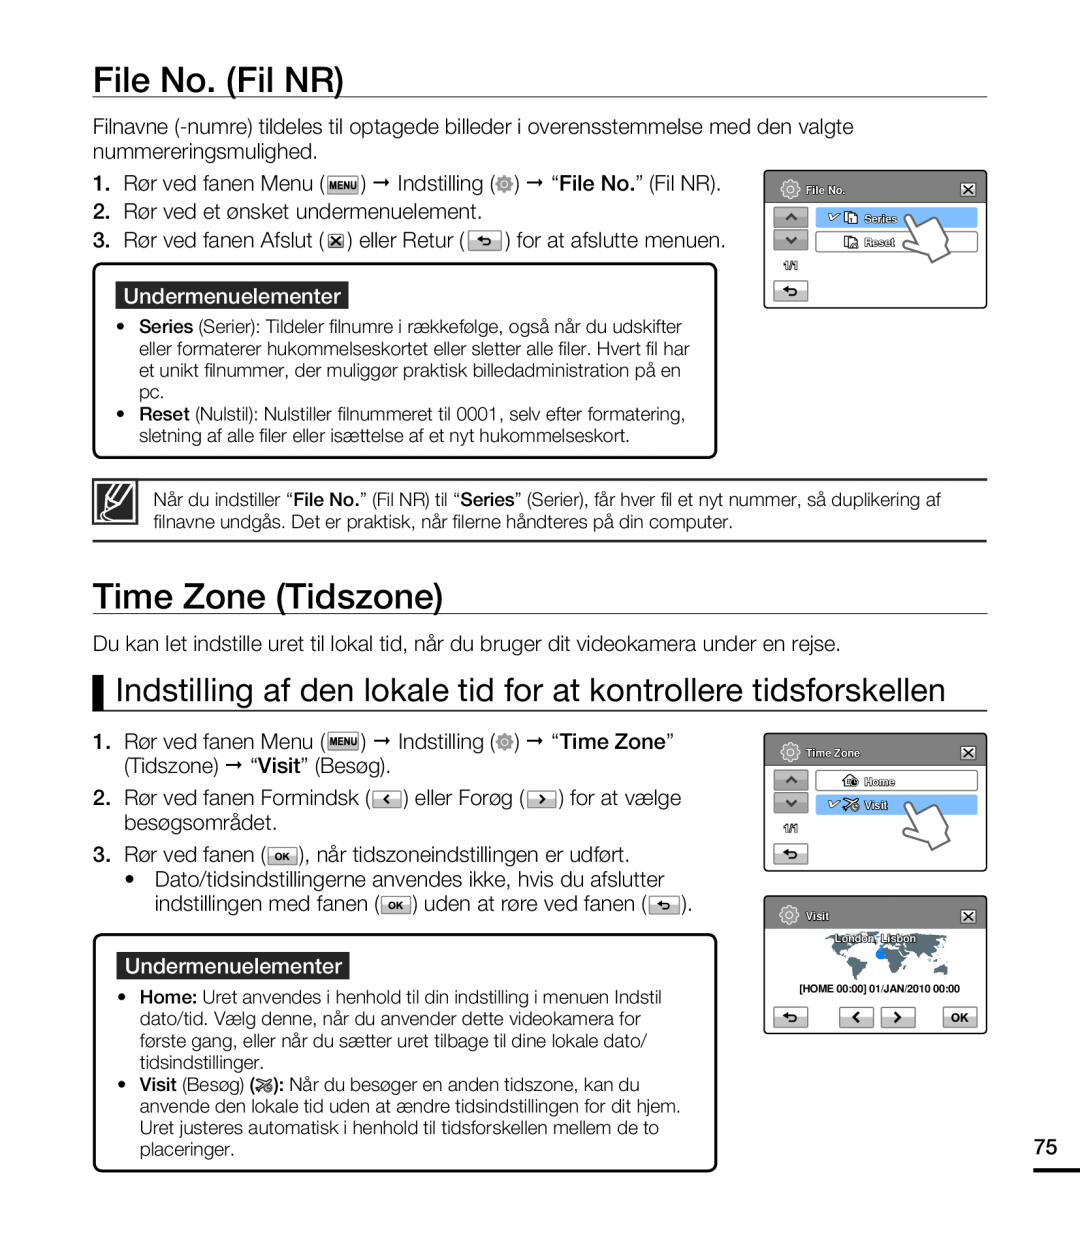 Samsung HMX-T10BP/EDC File No. Fil NR, Time Zone Tidszone, Indstilling af den lokale tid for at kontrollere tidsforskellen 